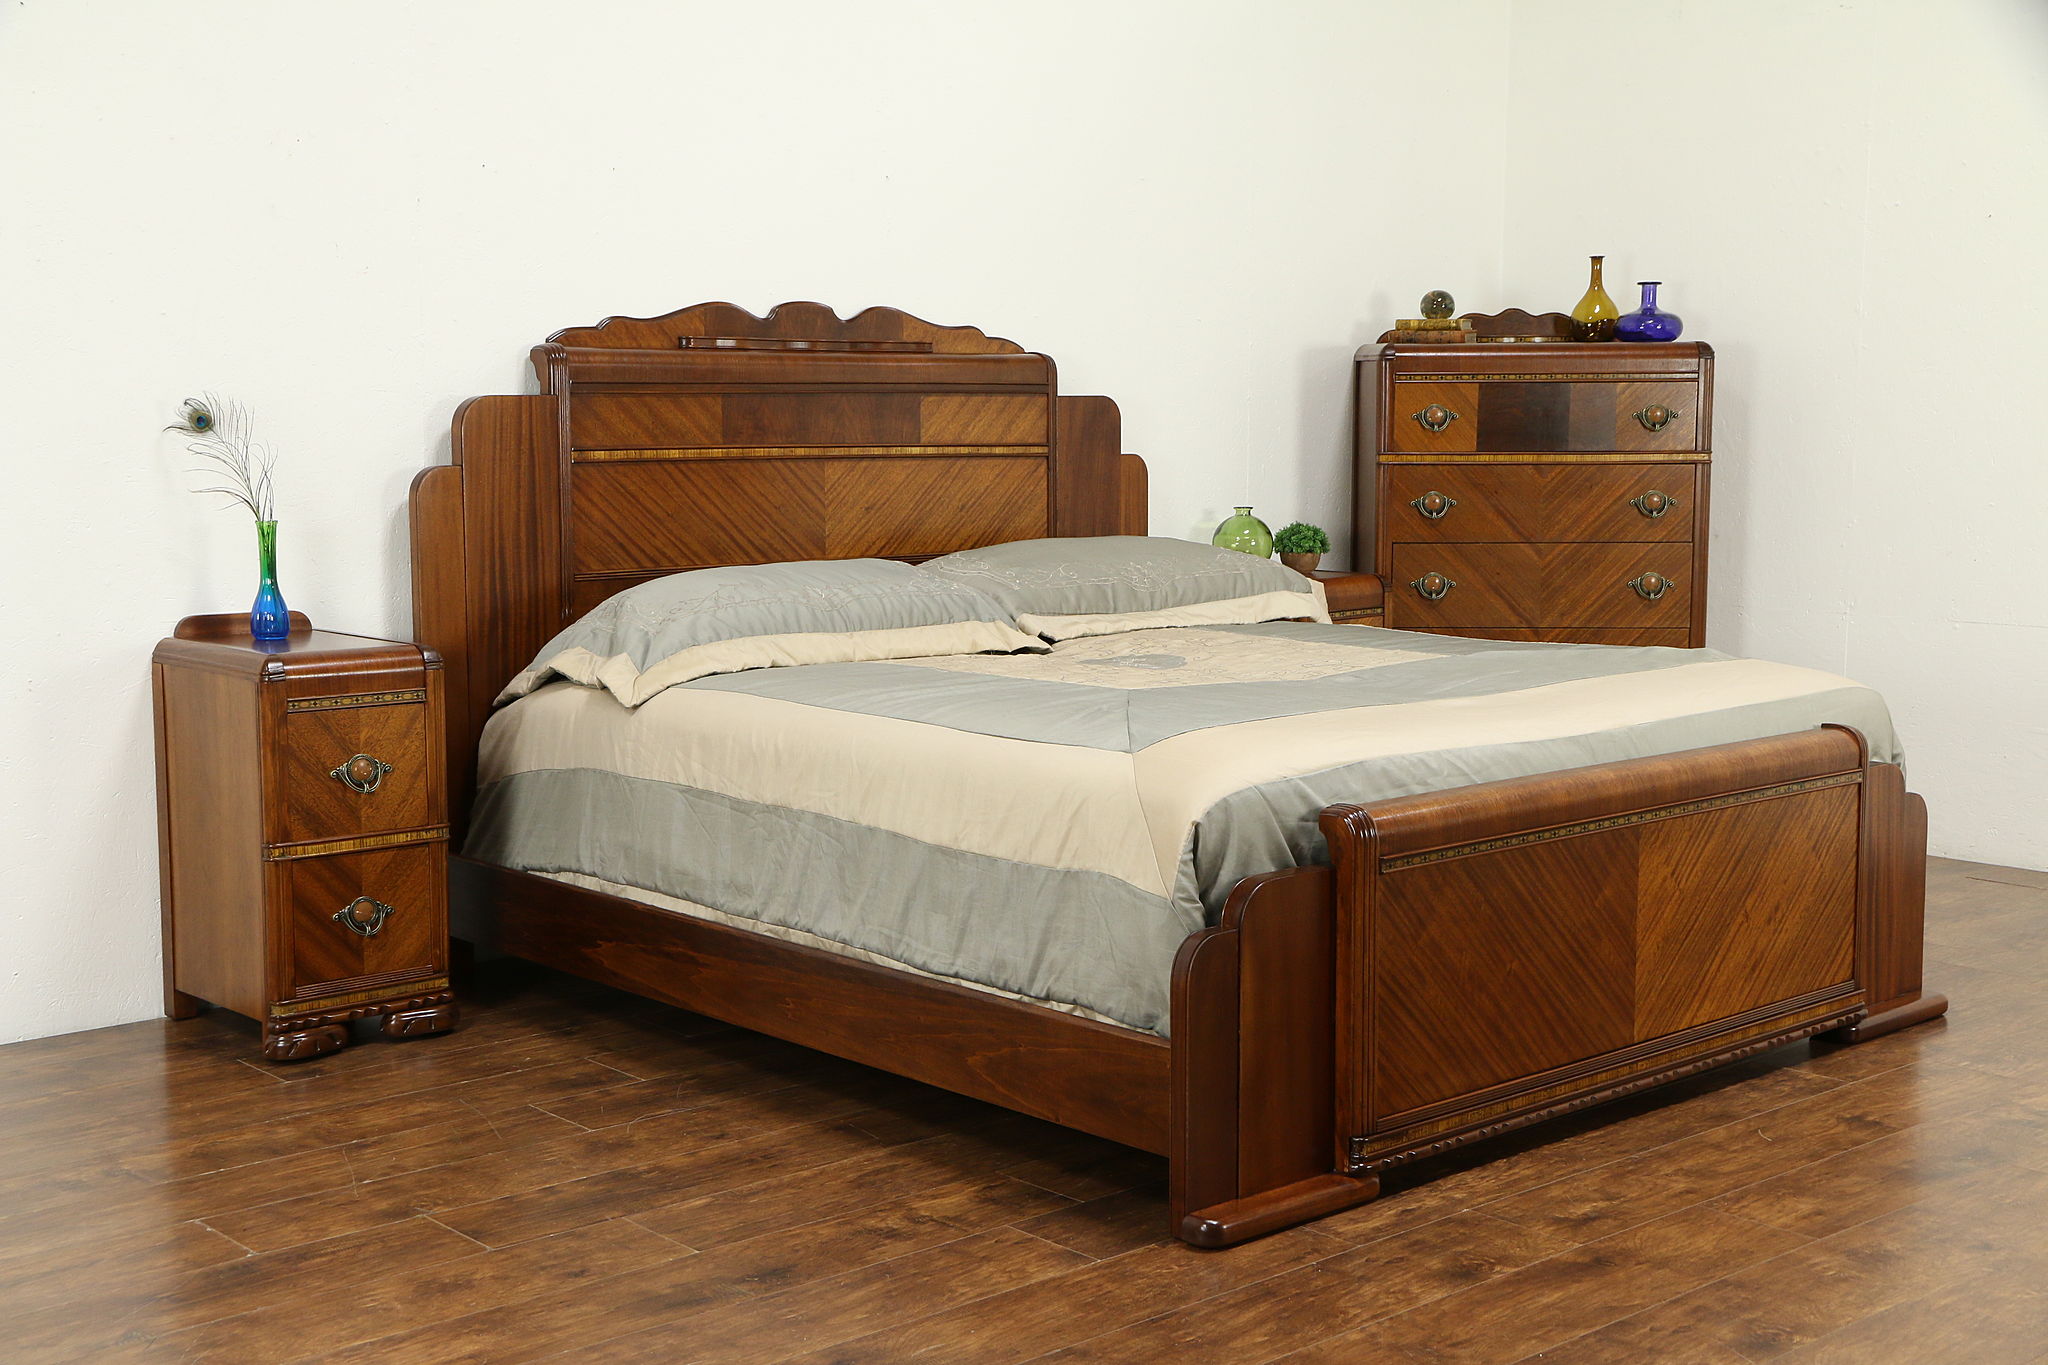 1930s art deco bedroom furniture